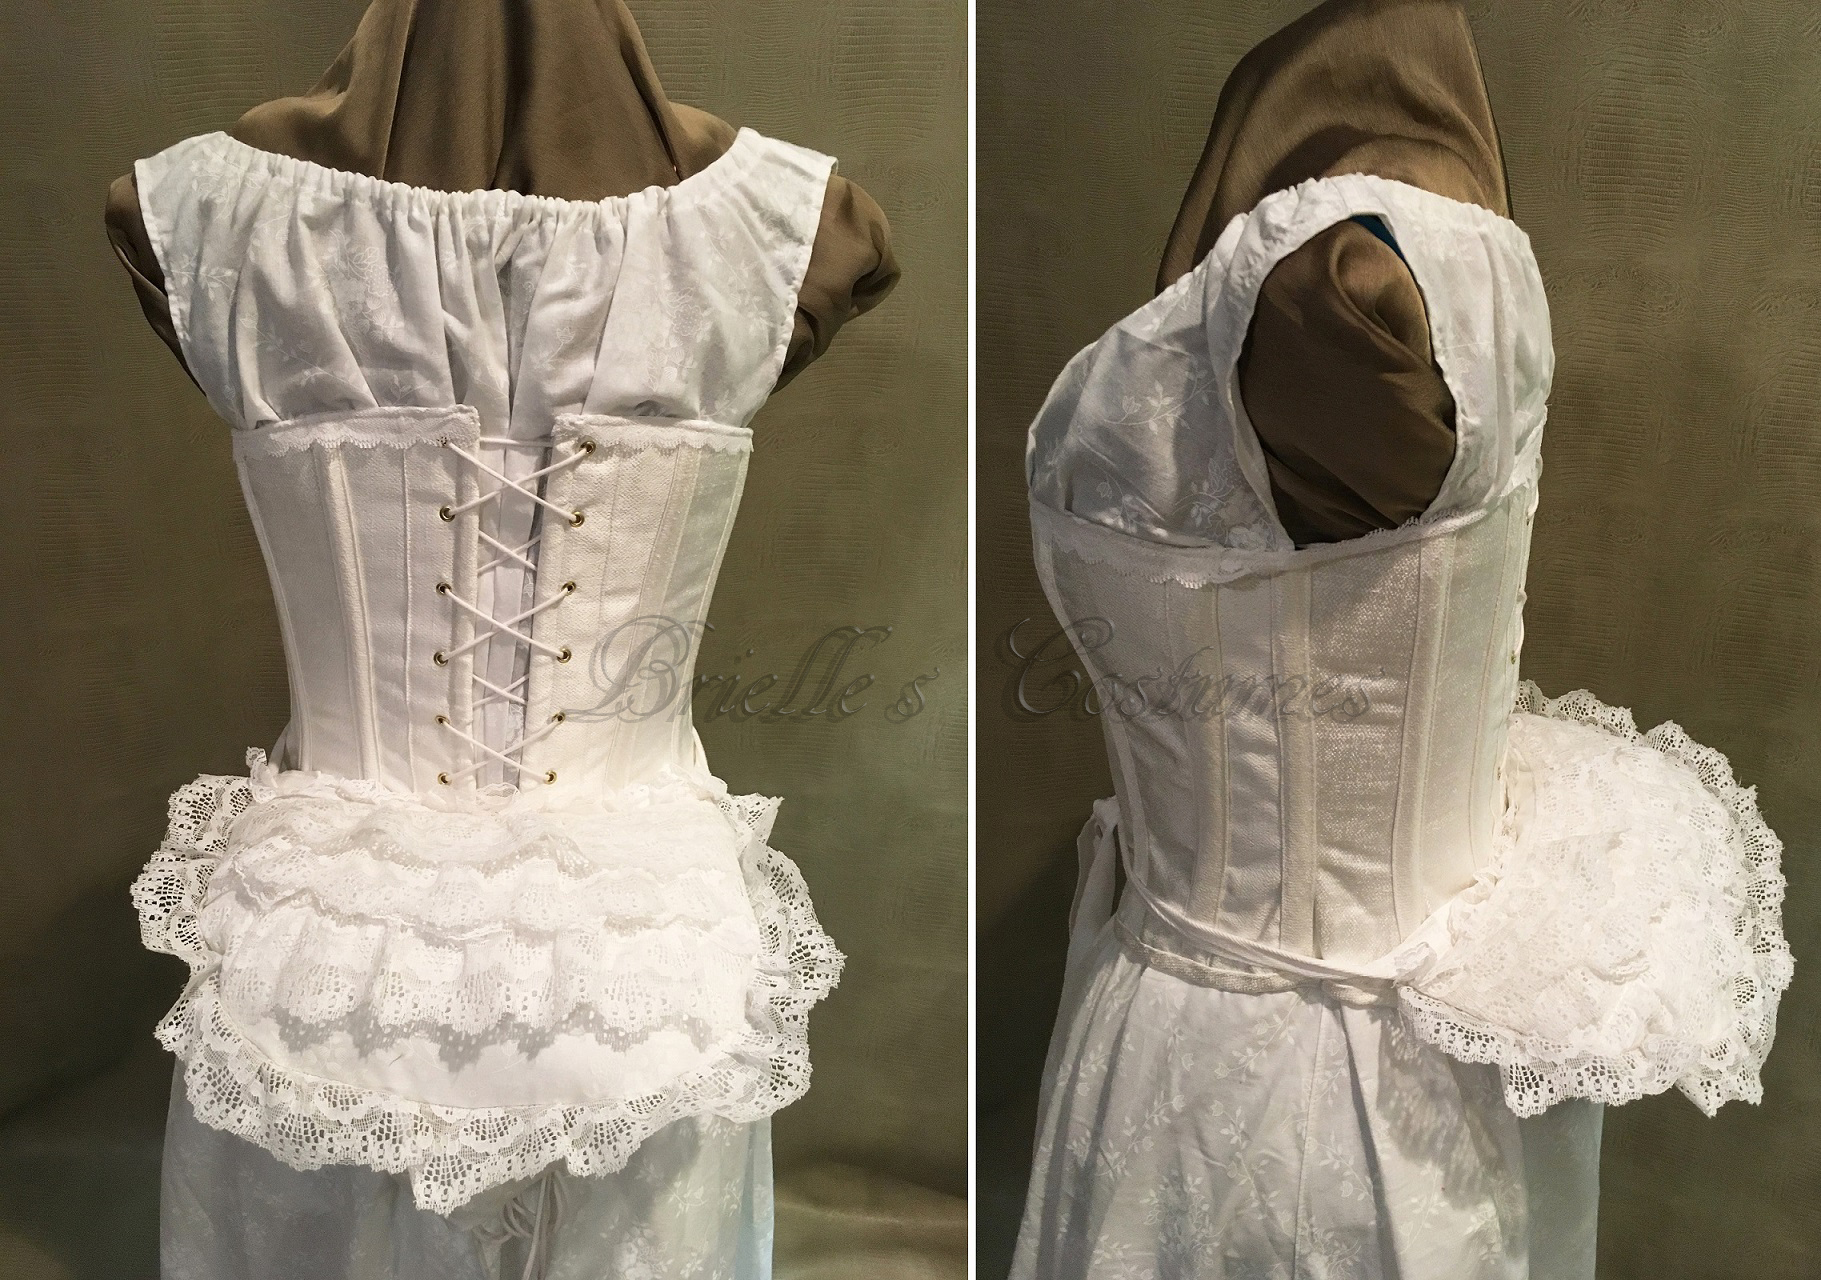 Victorian — Brielle Costumes